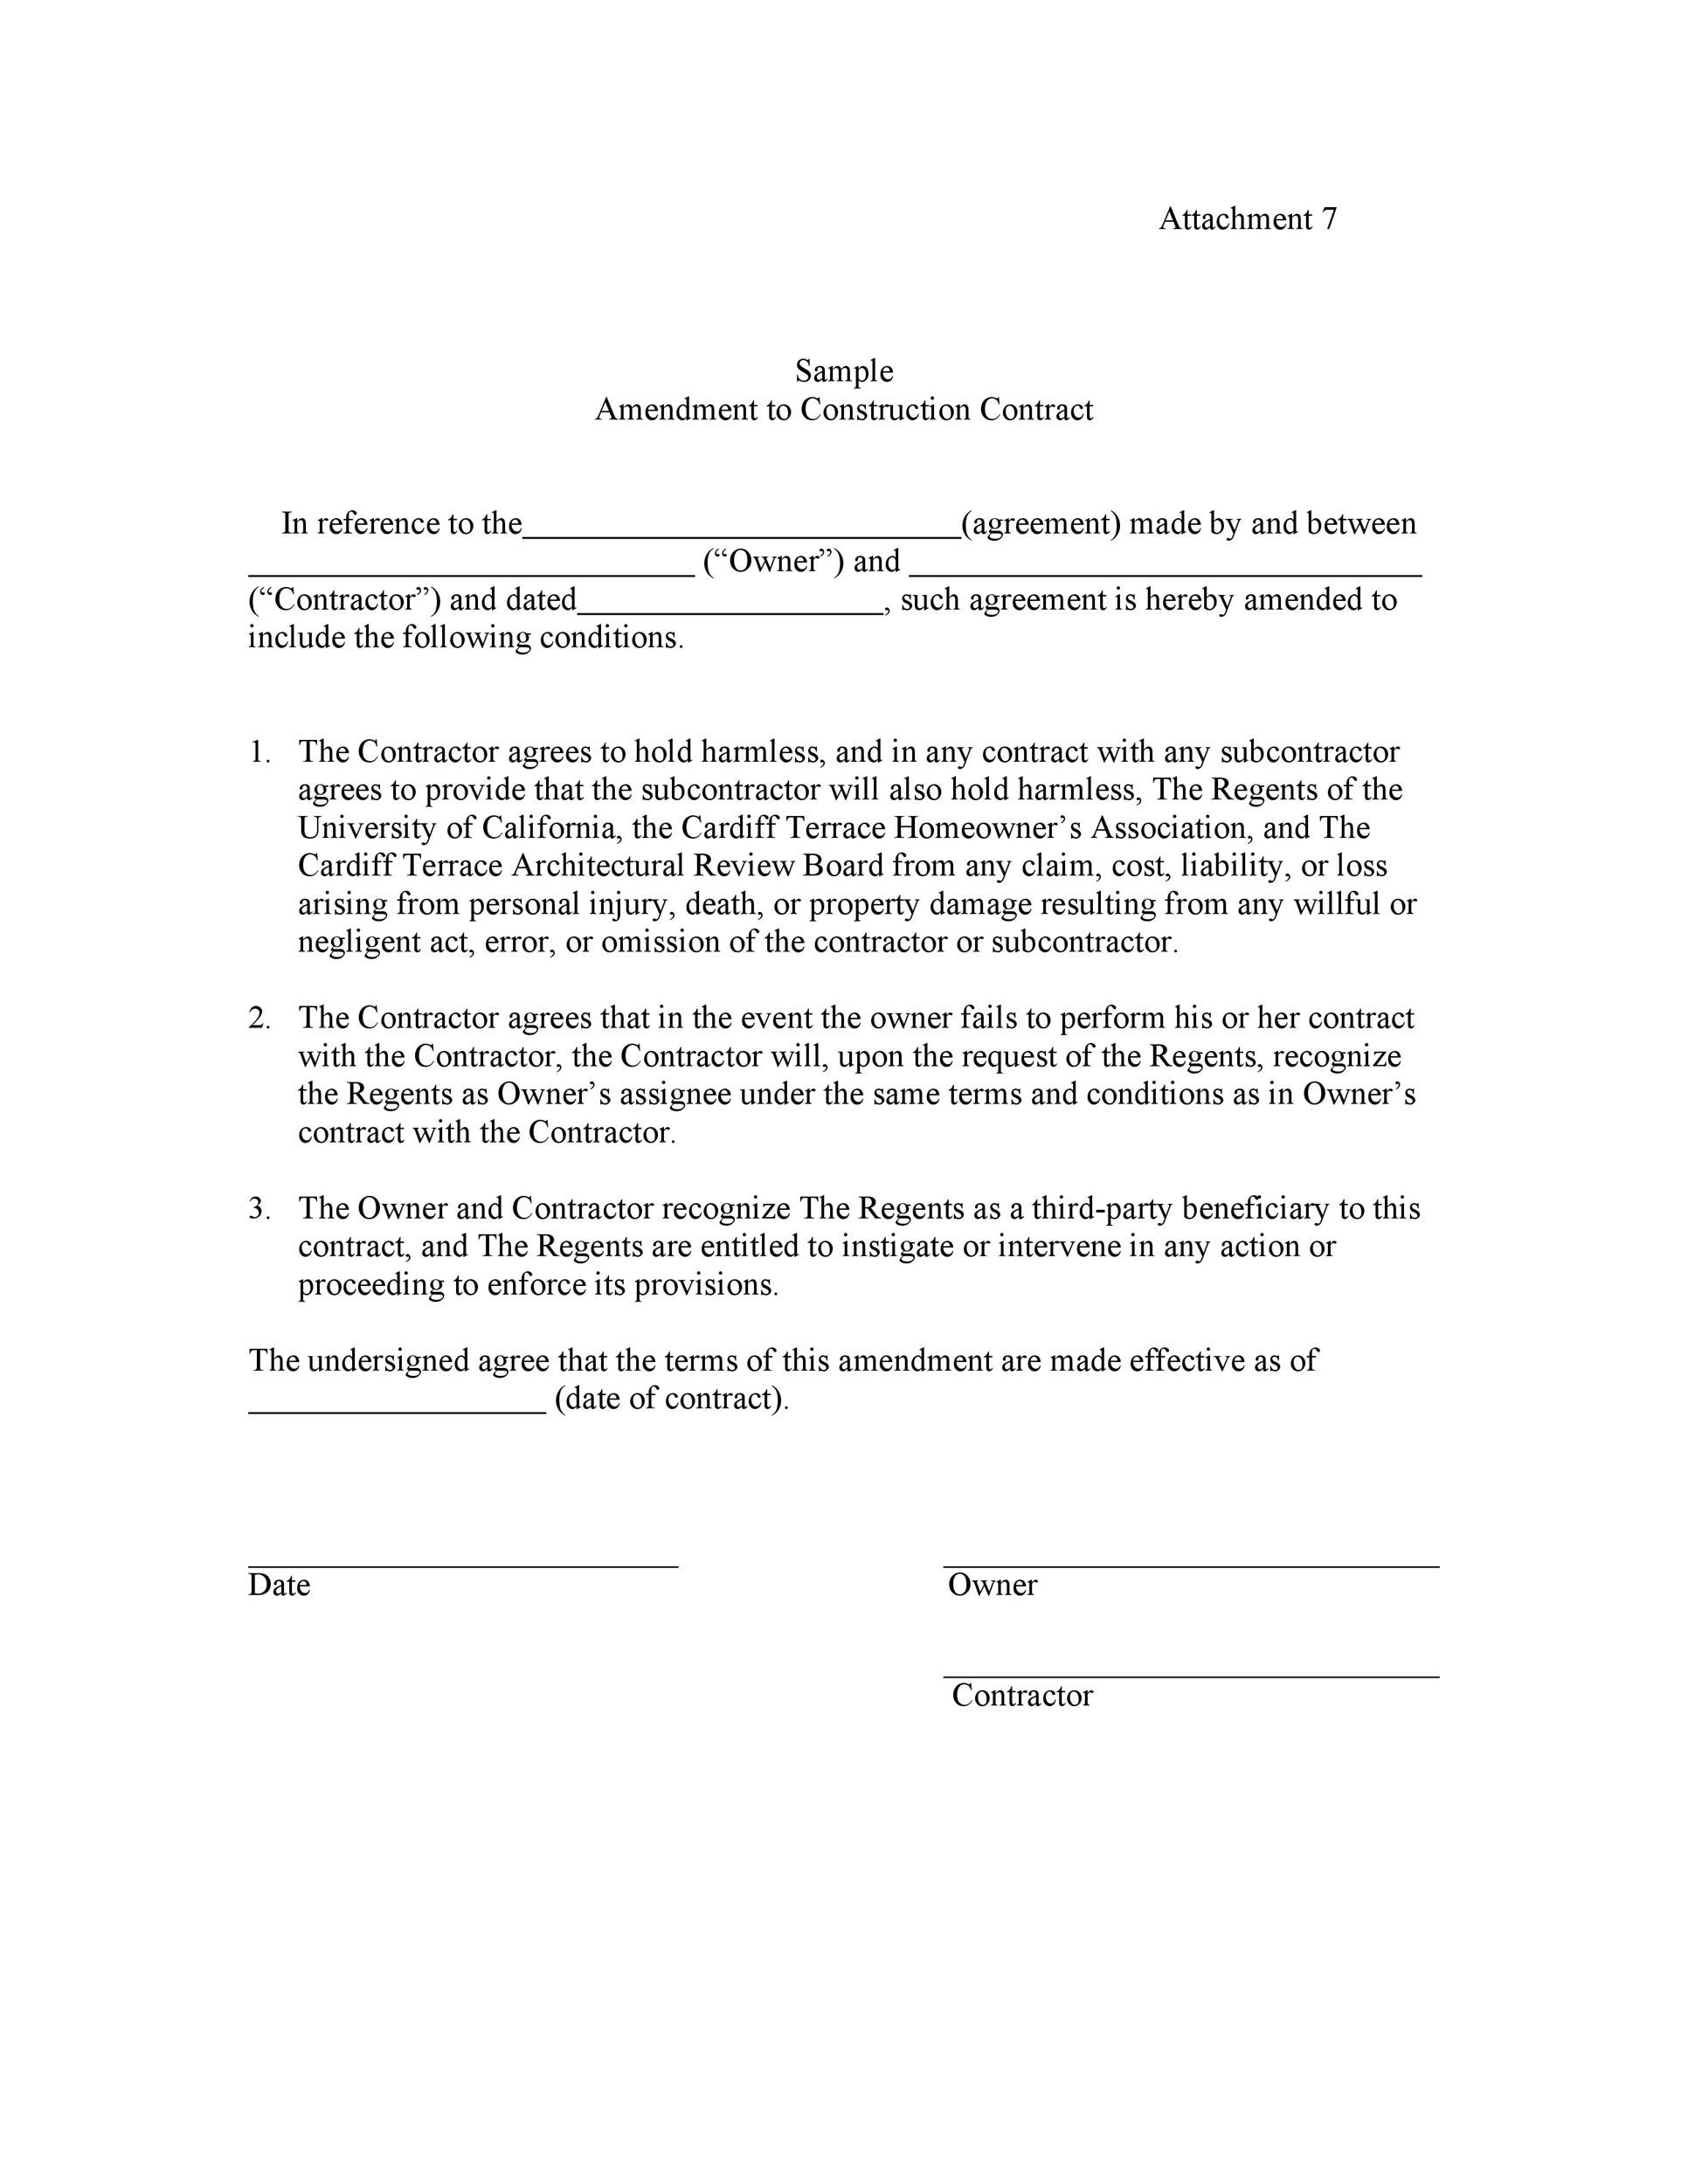 Libre modificación del contrato 11